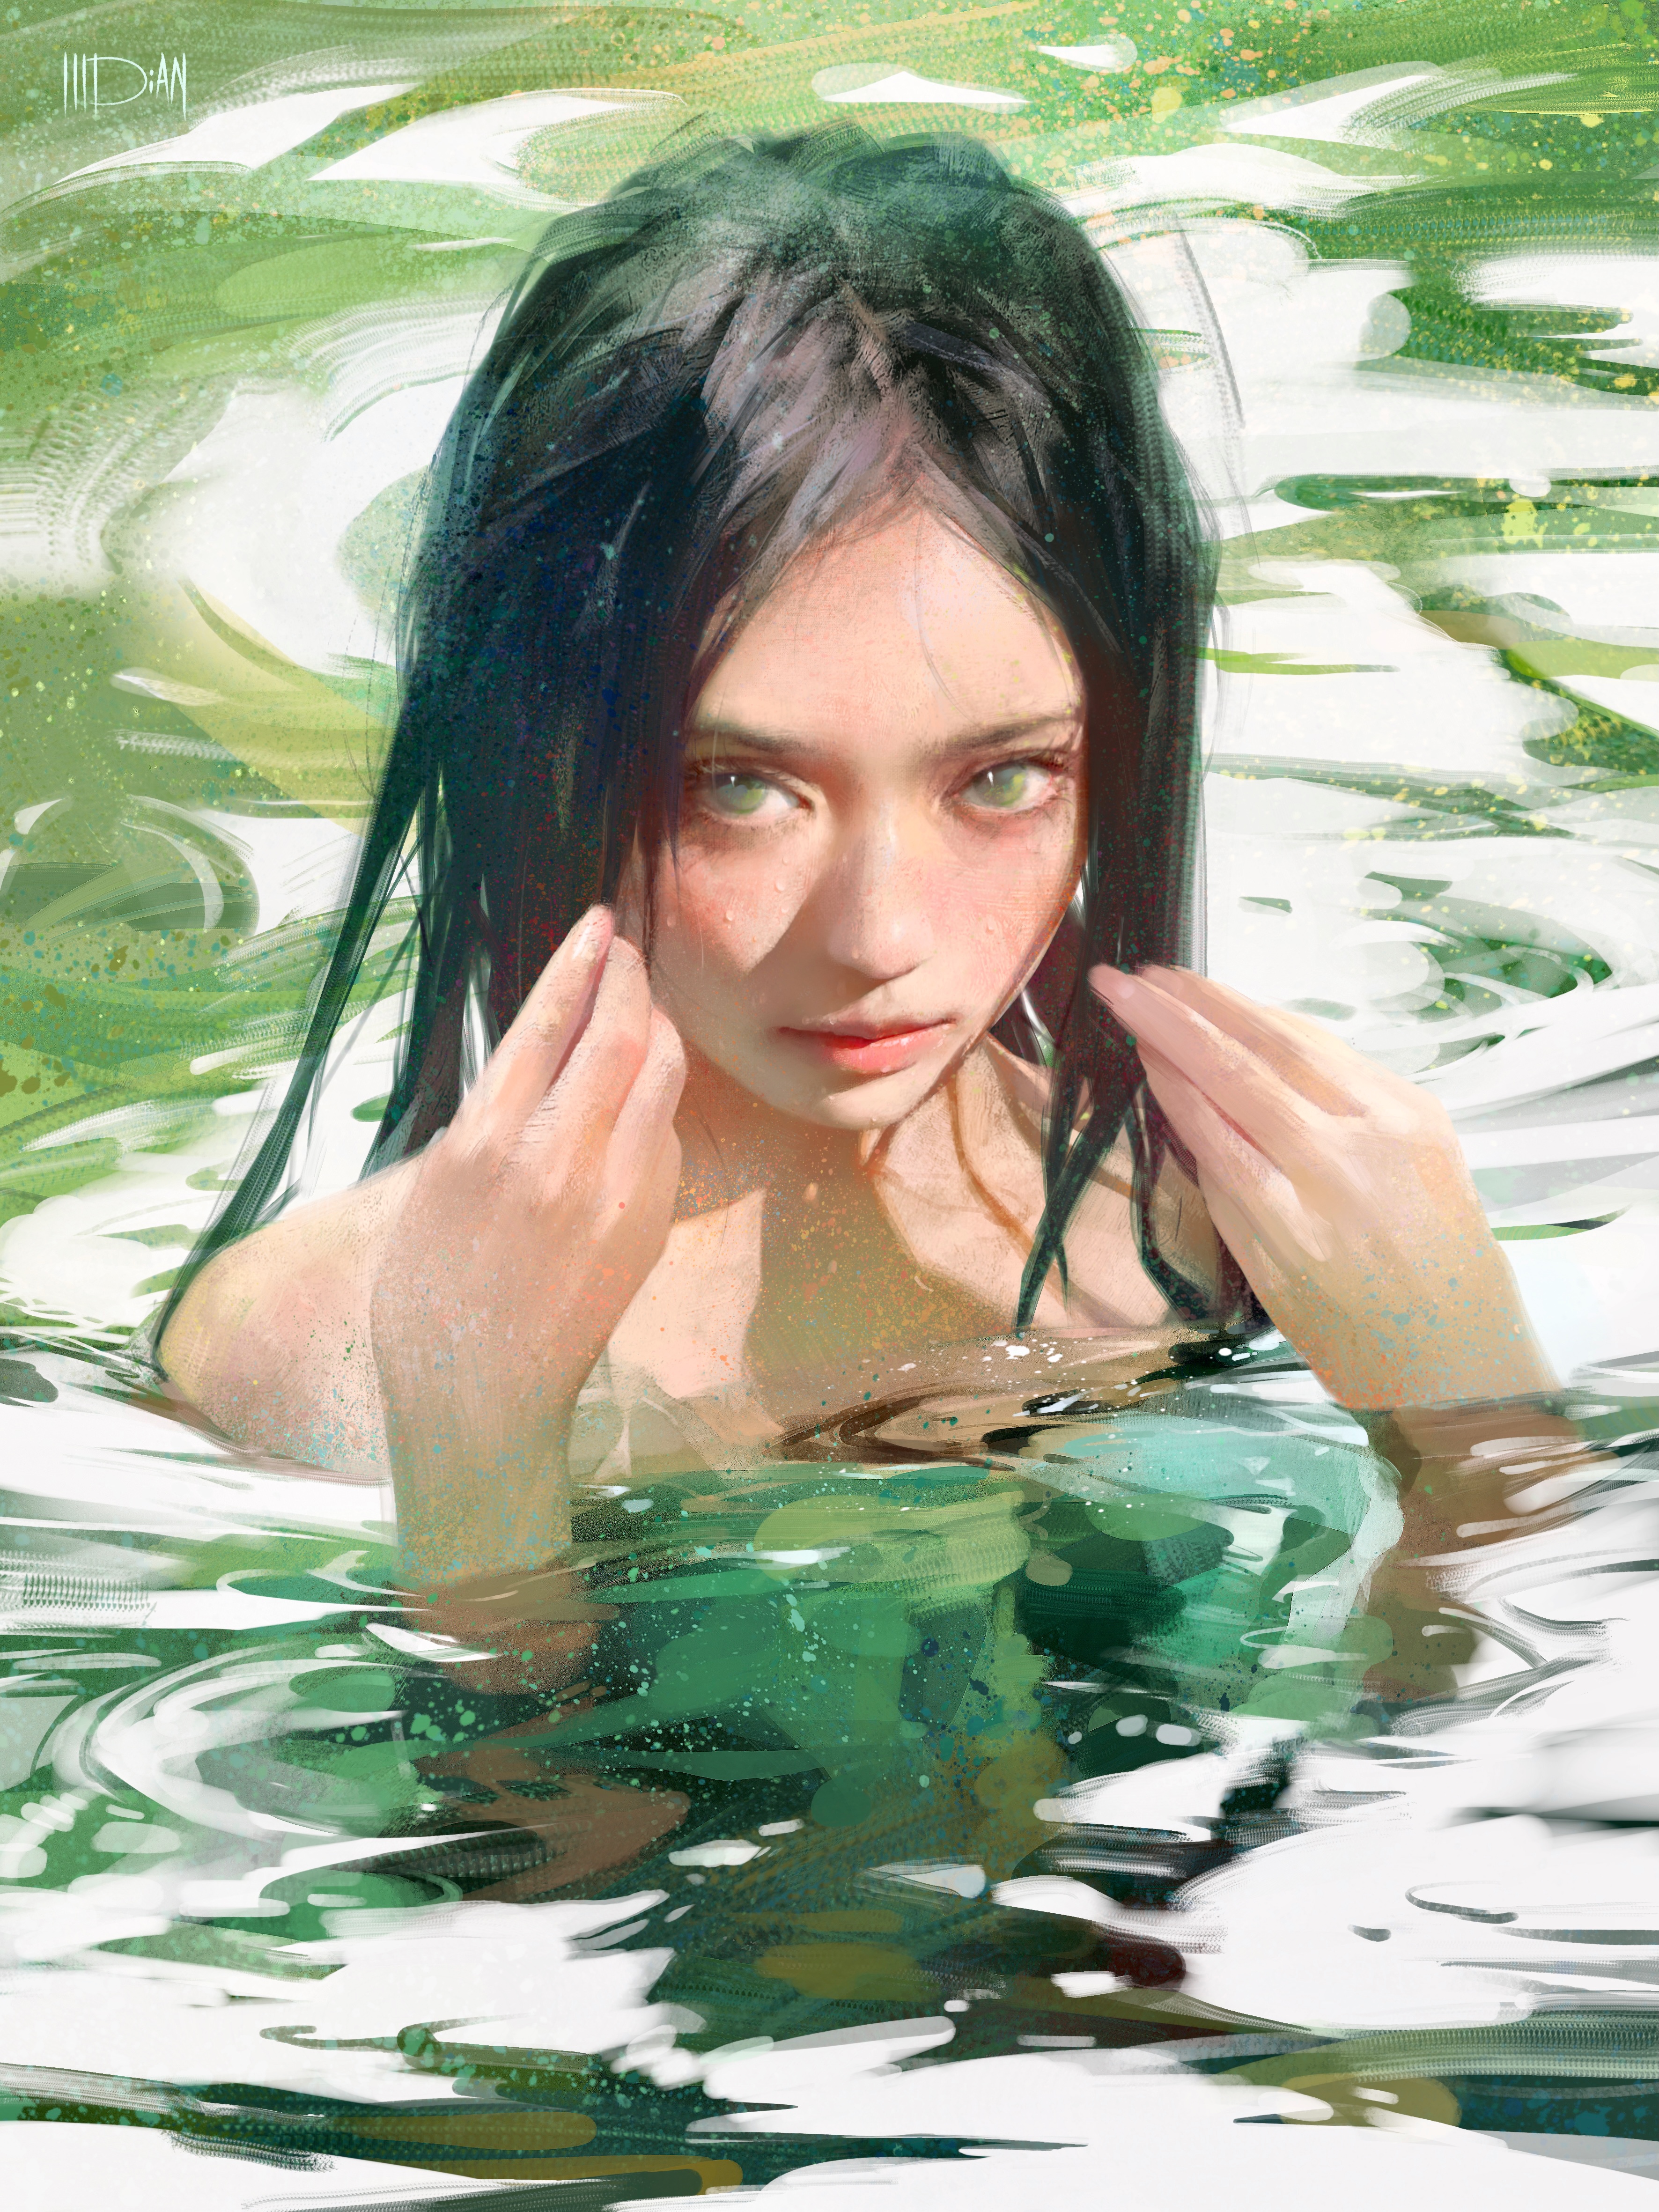 ILLDiAN Portrait Women Vertical Water Green Eyes Black Hair Wet Women Outdoors Green 3543x4724